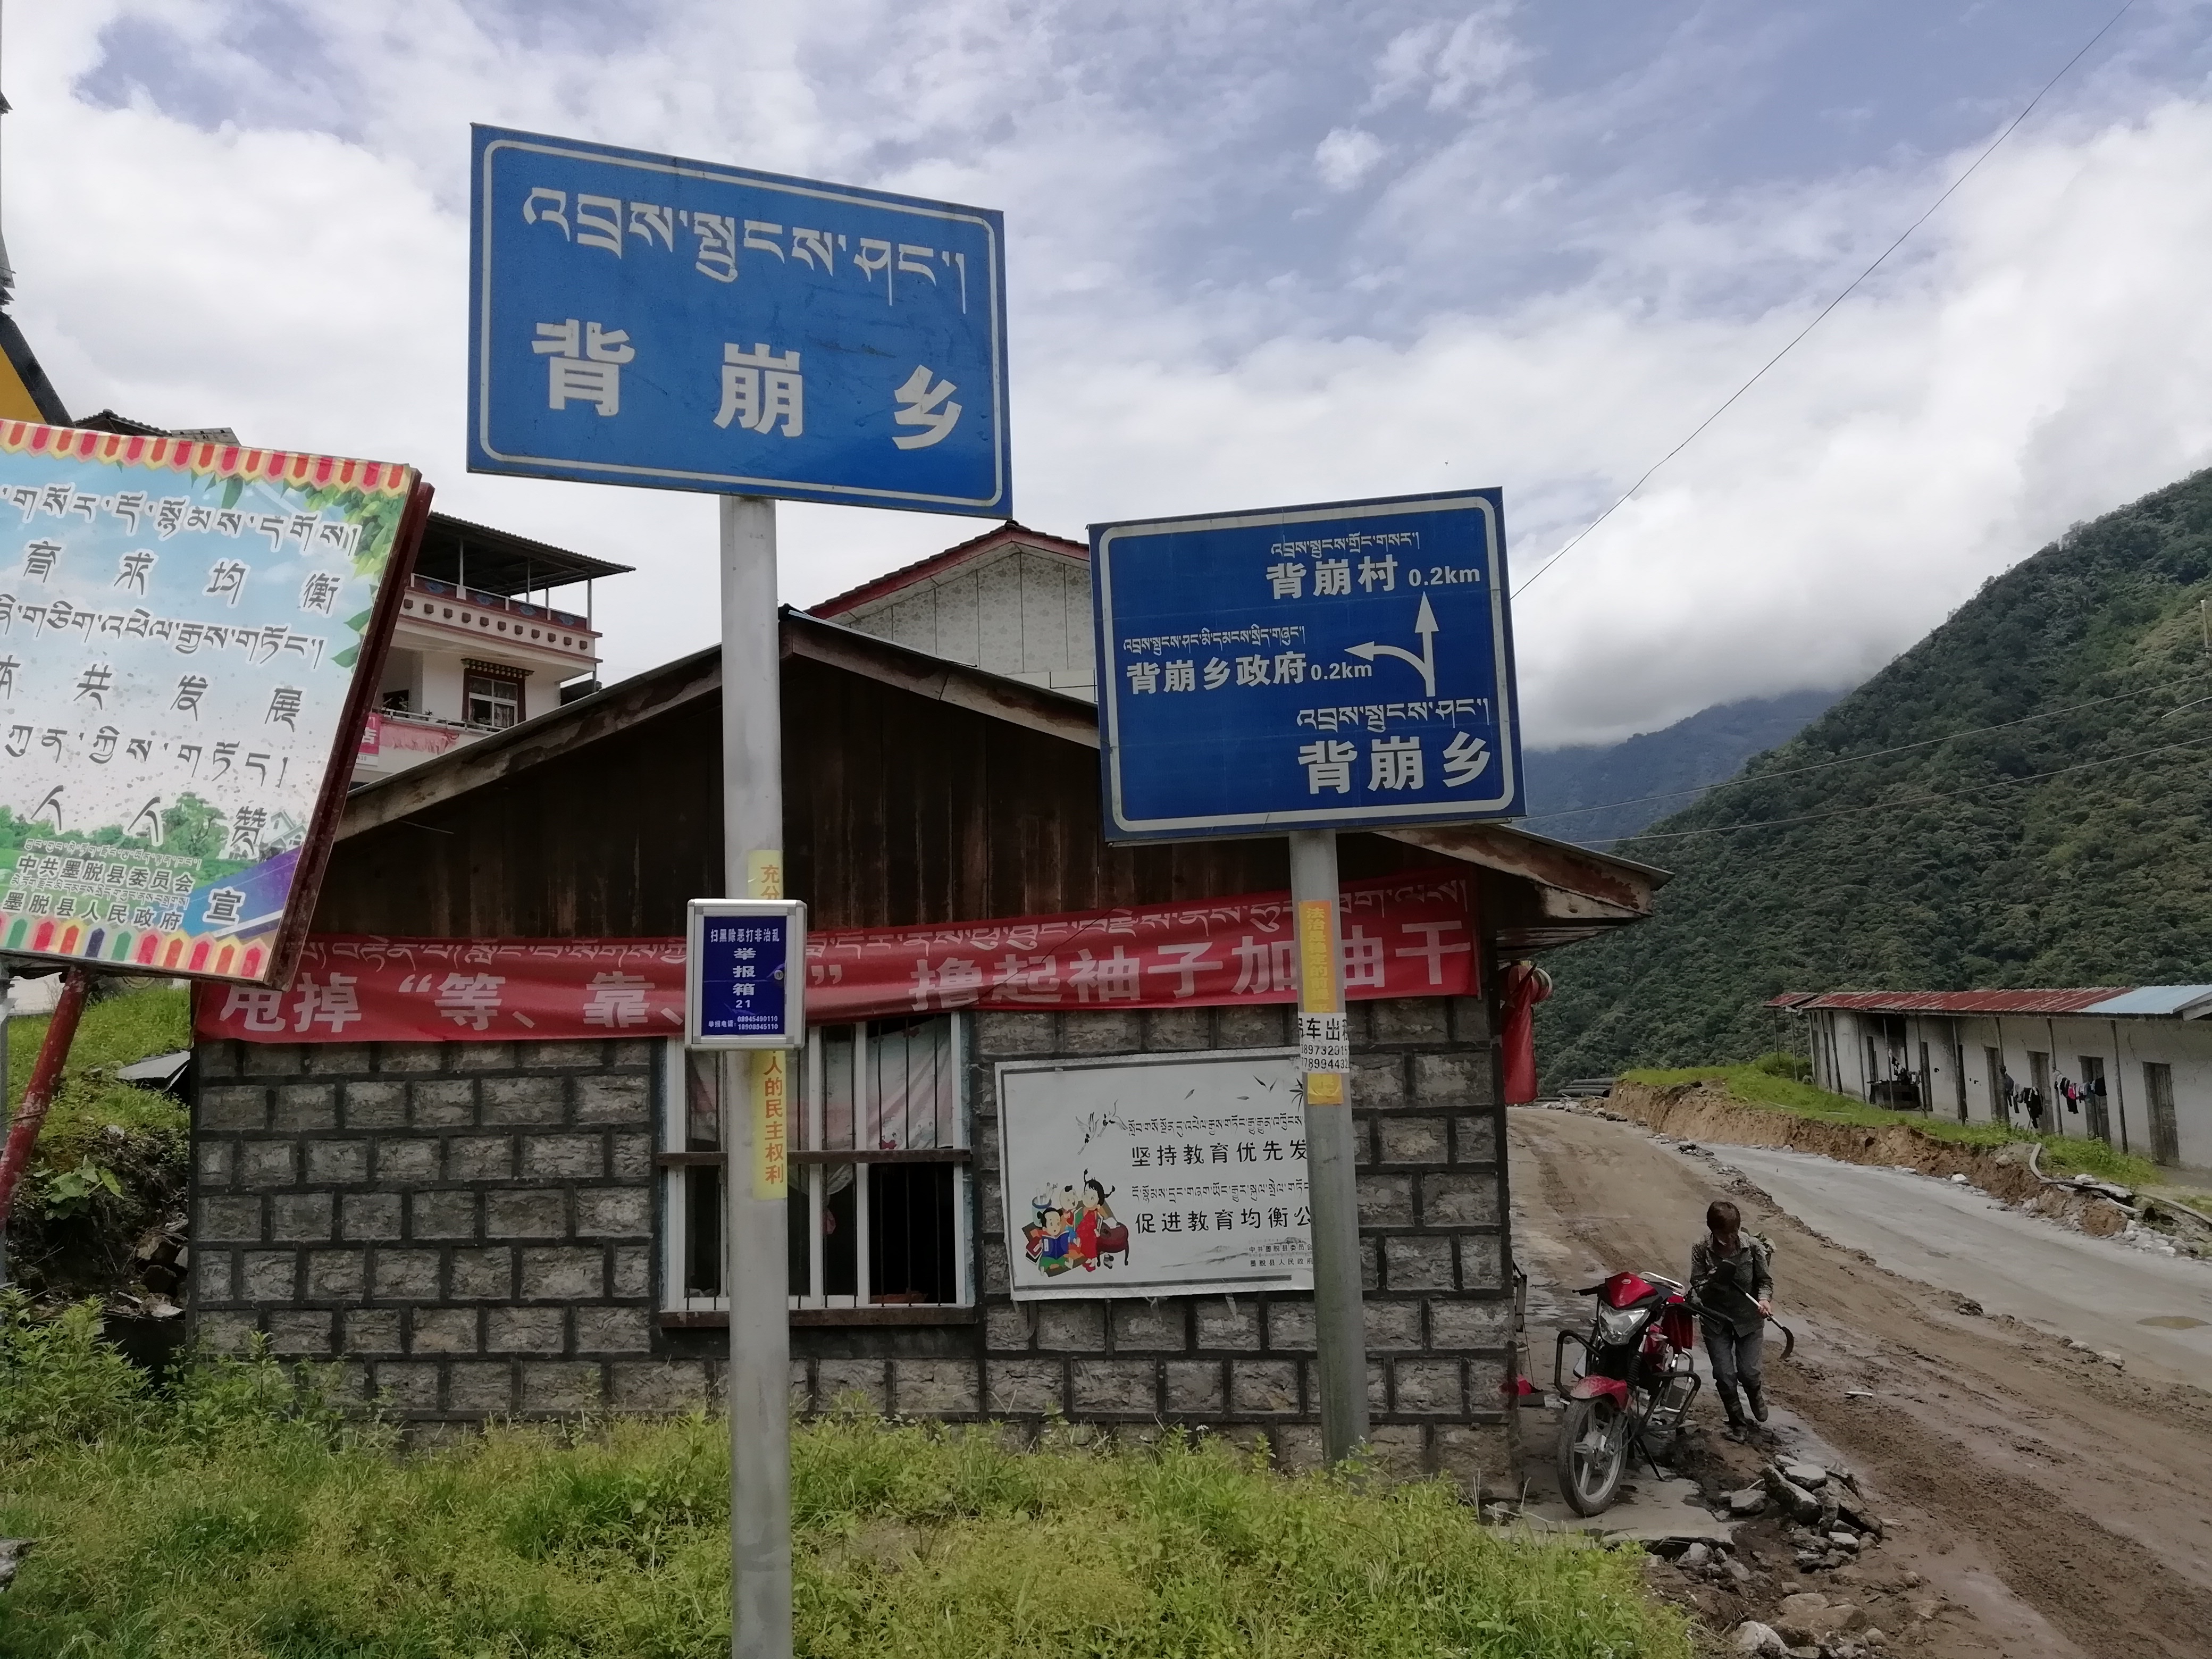 第二天的目标是去背崩乡西让村,上图为墨脱德兴雅鲁藏布江 有云的山